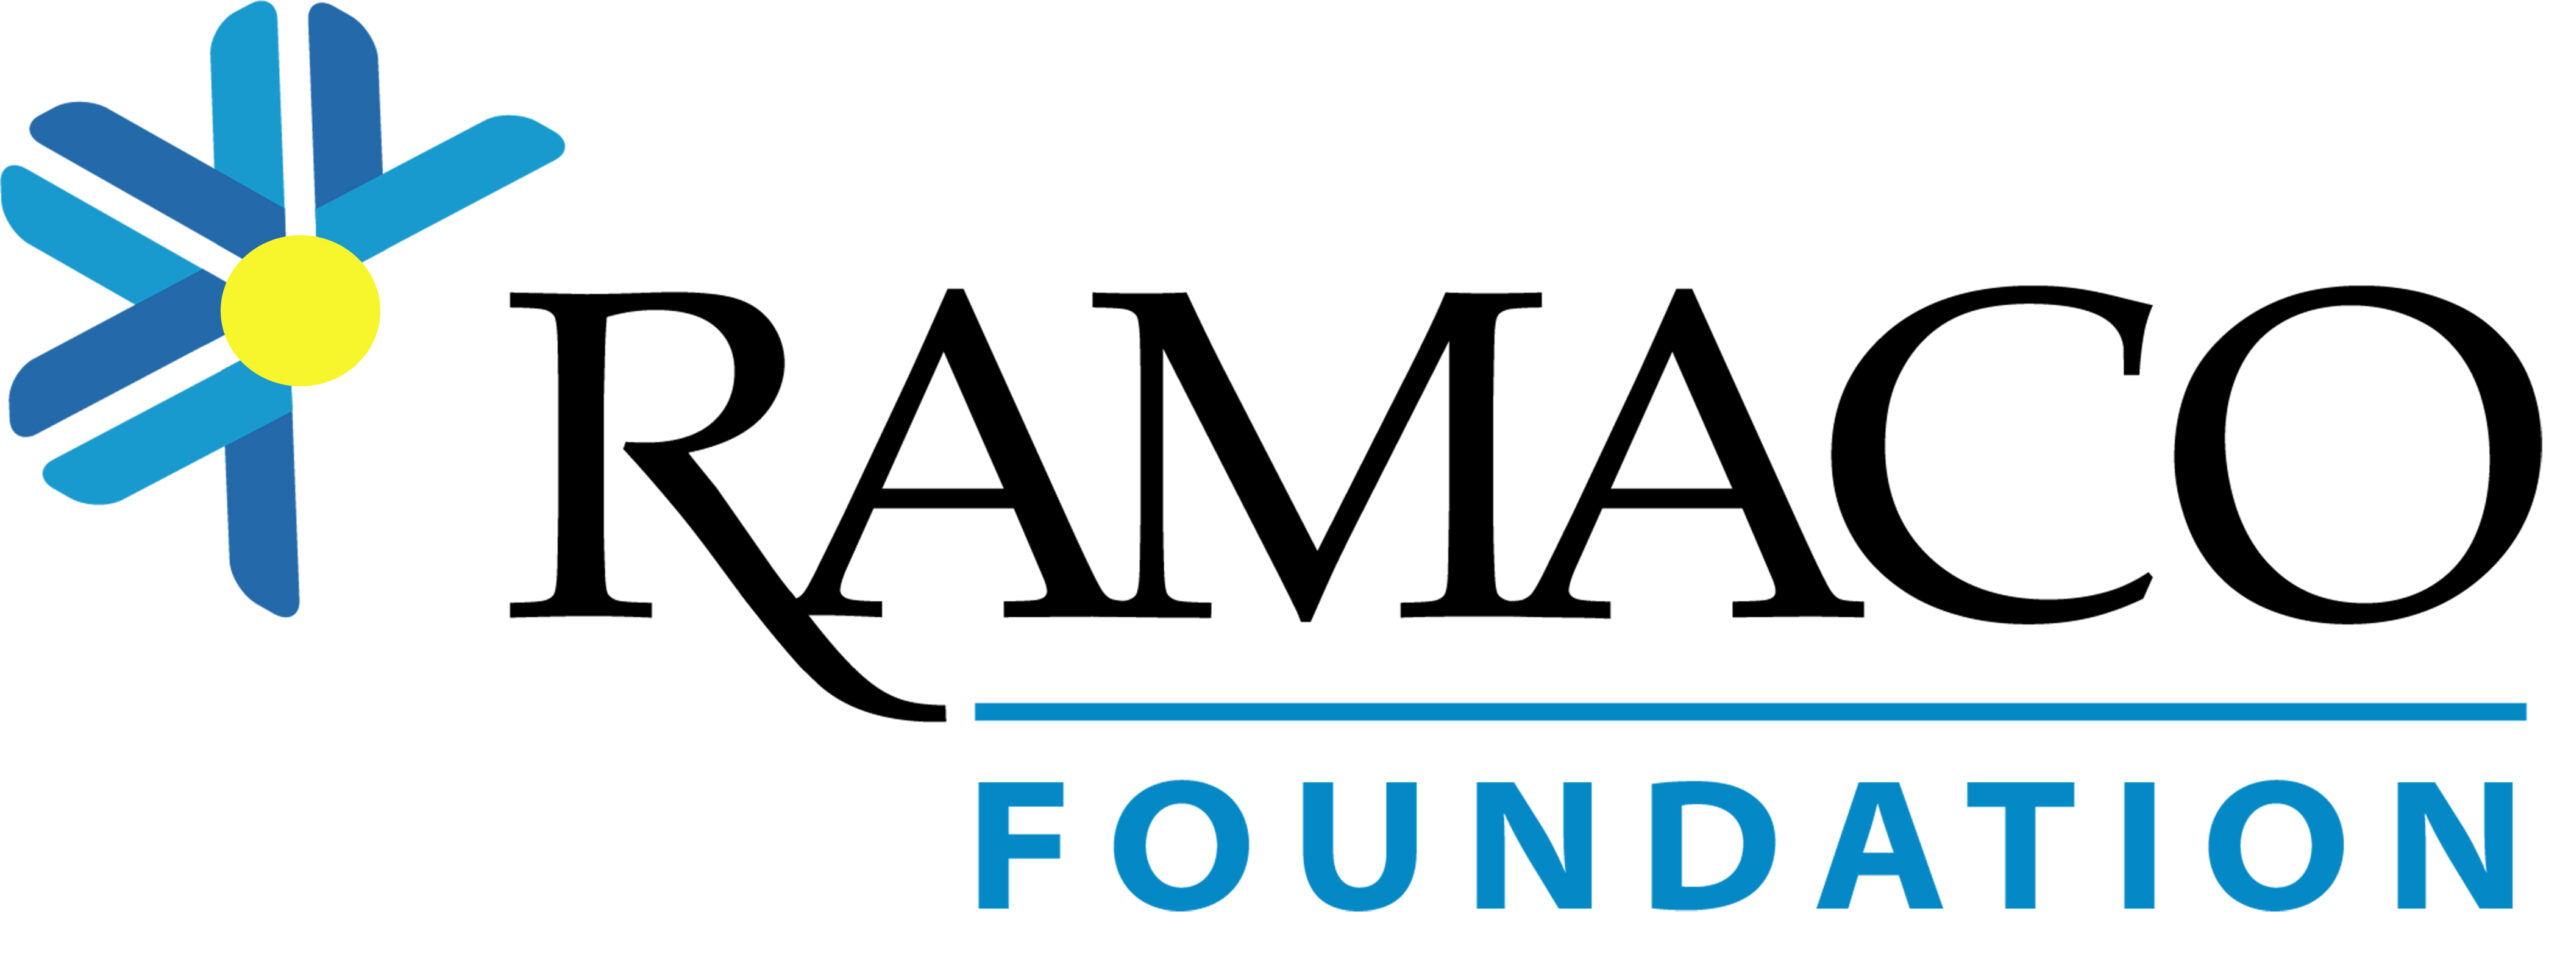 Ramaco Foundation Logo - White Background